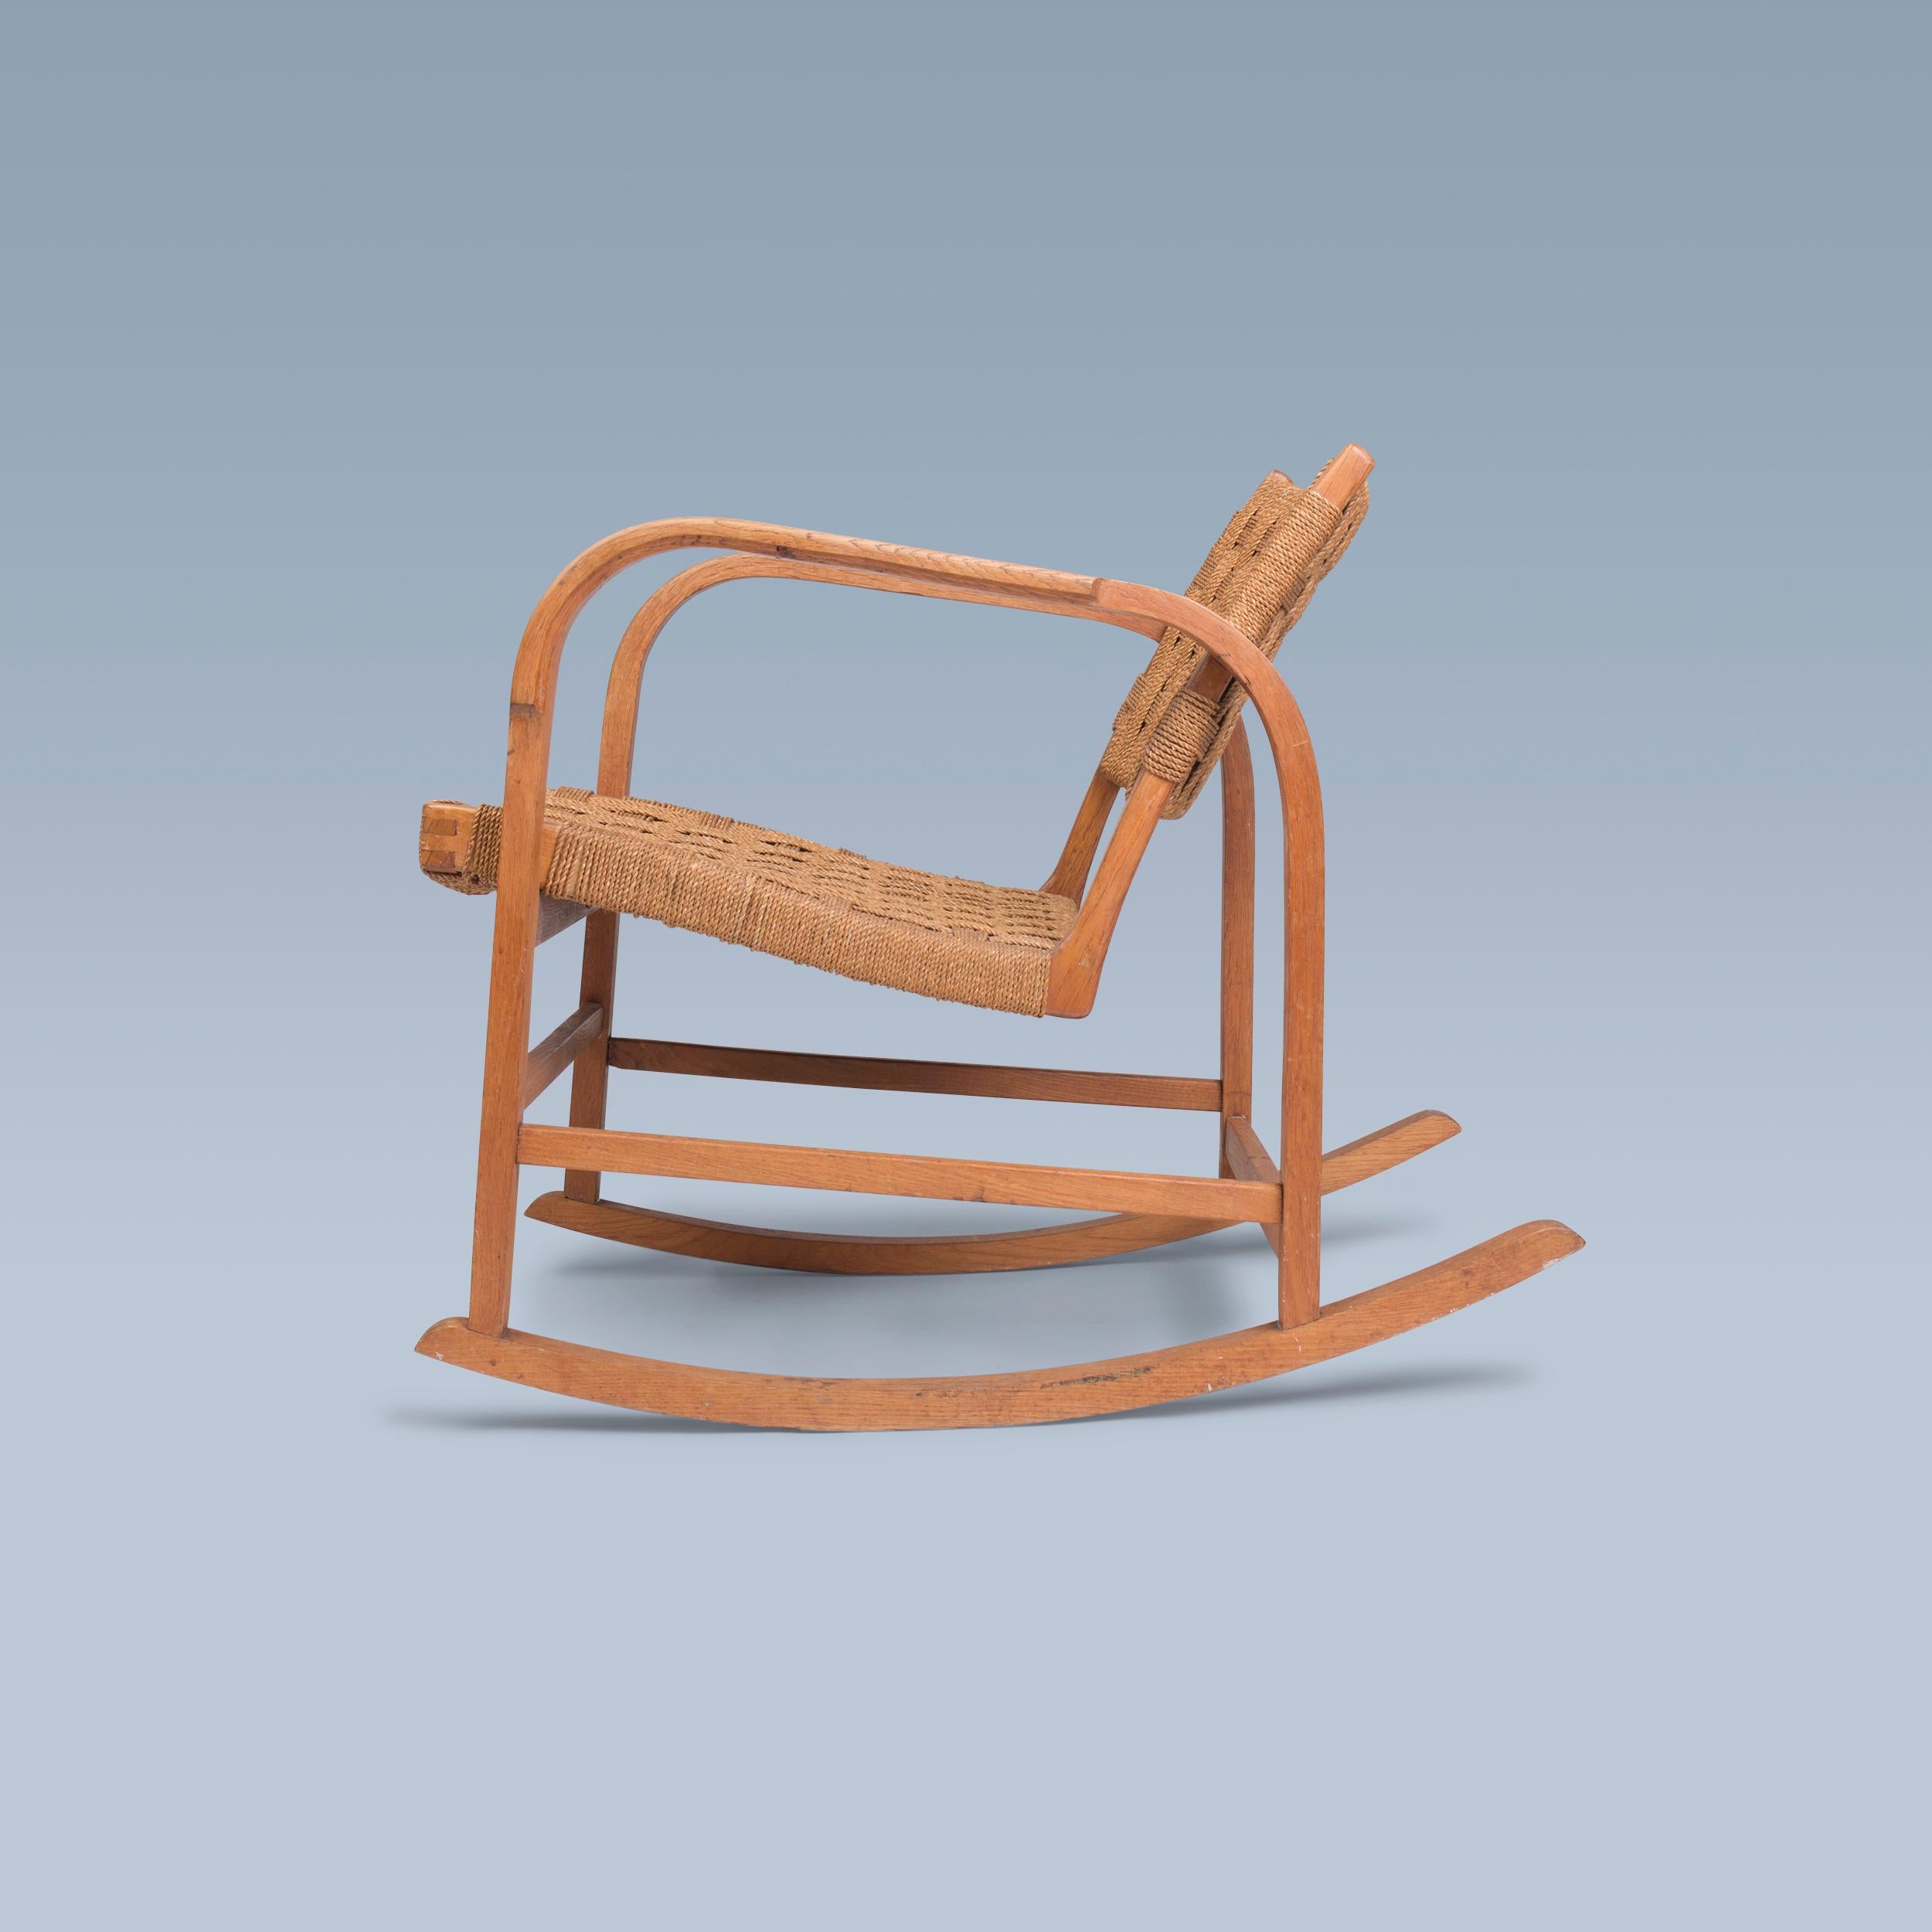 Dieser Schaukelstuhl aus patiniertem Eichenholz, entworfen von Magnus Læssøe Stephensen (1903-1984), hat Sitz und Rückenlehne aus geflochtenem Seegras.

Er wurde von der Tischlerei Clausen in Brørup, Dänemark, ca. in den 1930er Jahren